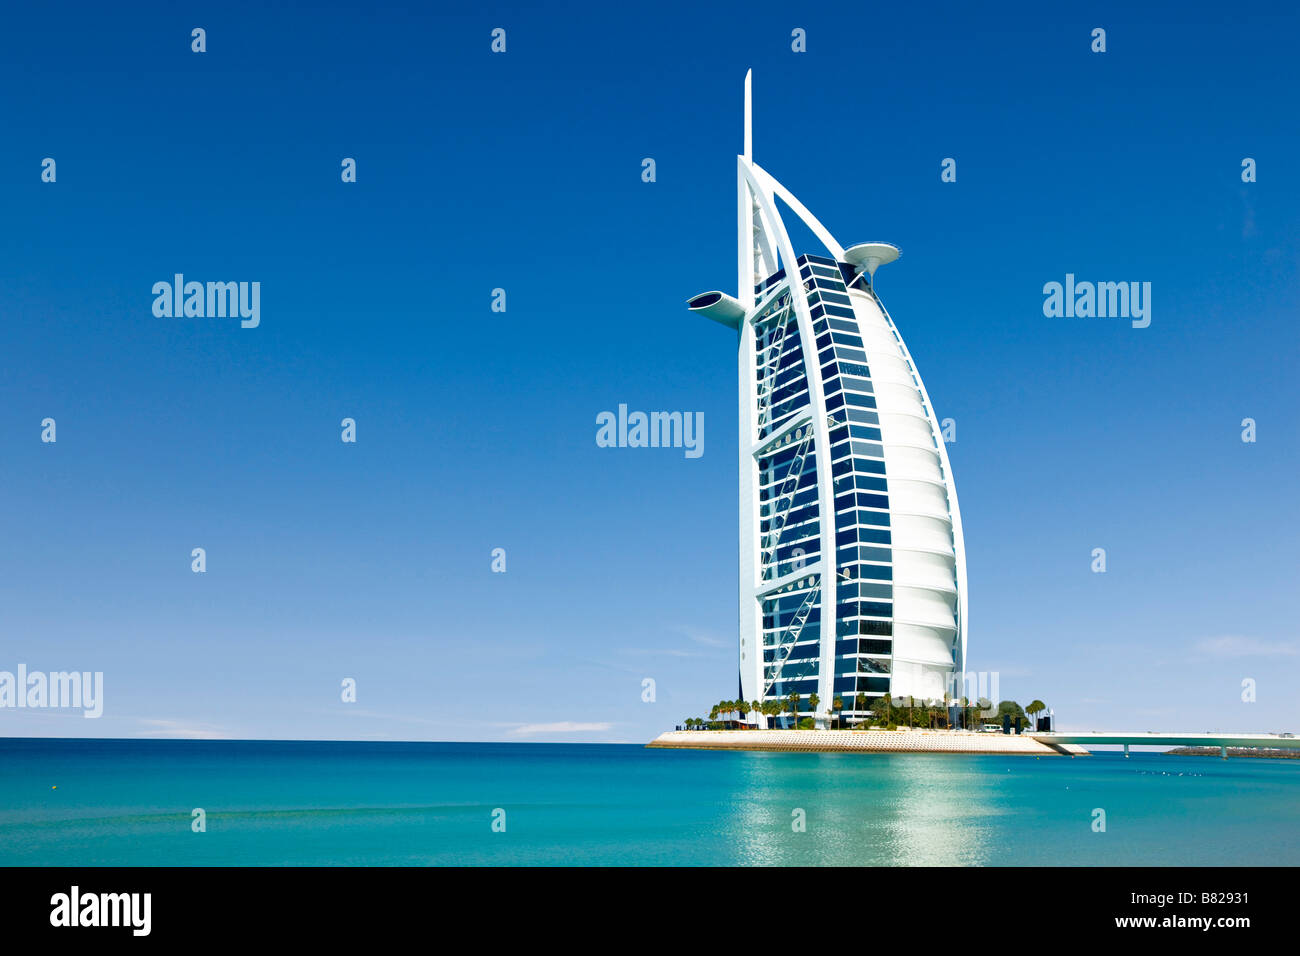 Burj al arab hotel at Jumeirah Dubai Stock Photo